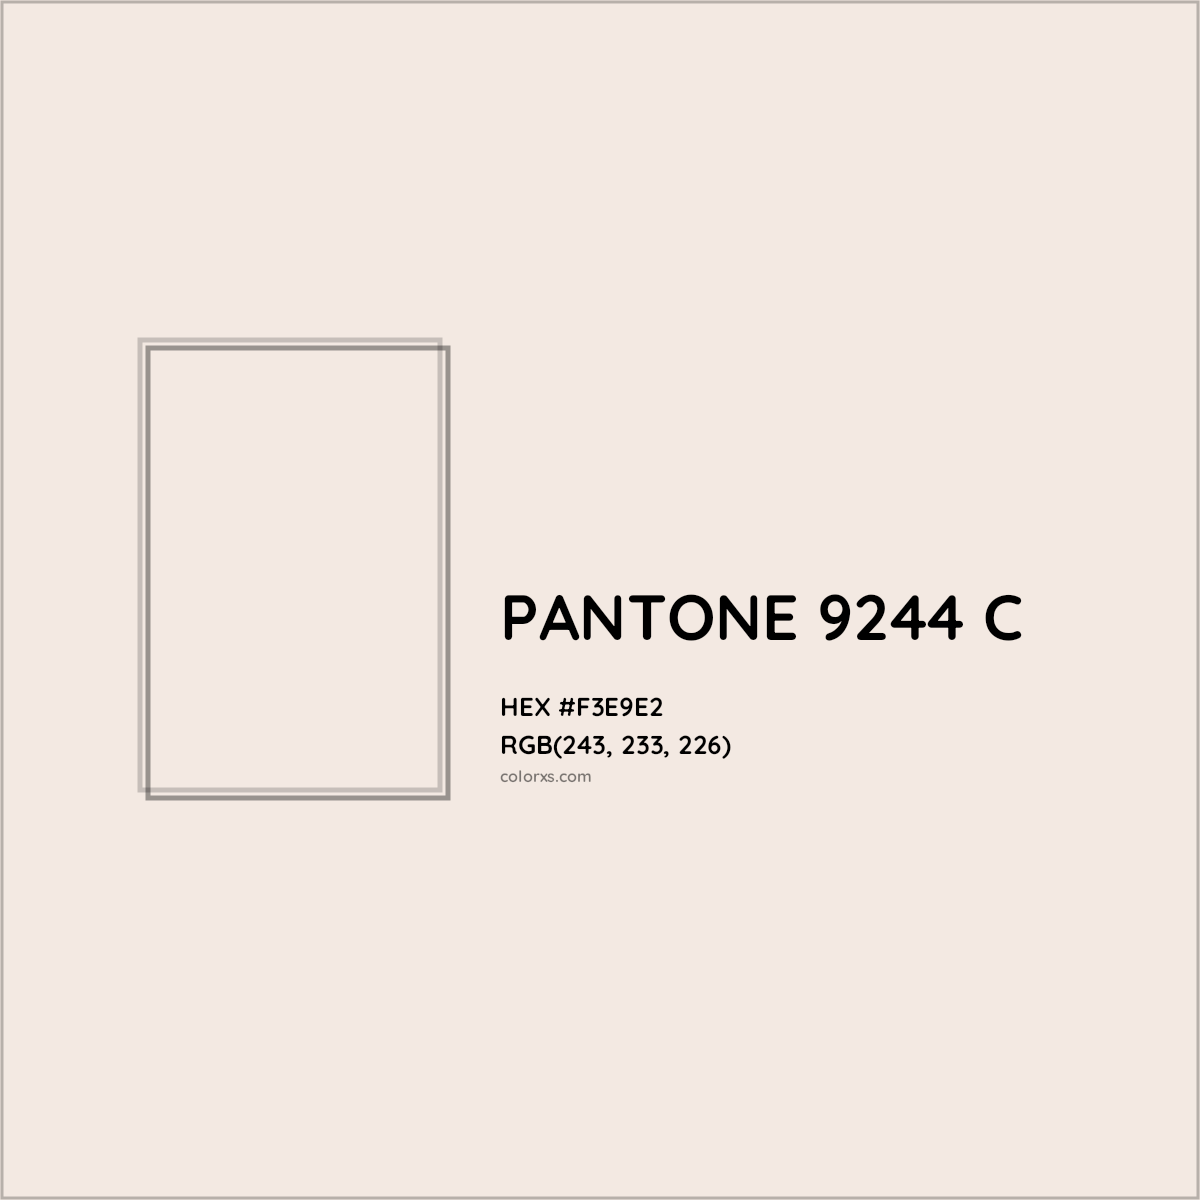 HEX #F3E9E2 PANTONE 9244 C CMS Pantone PMS - Color Code